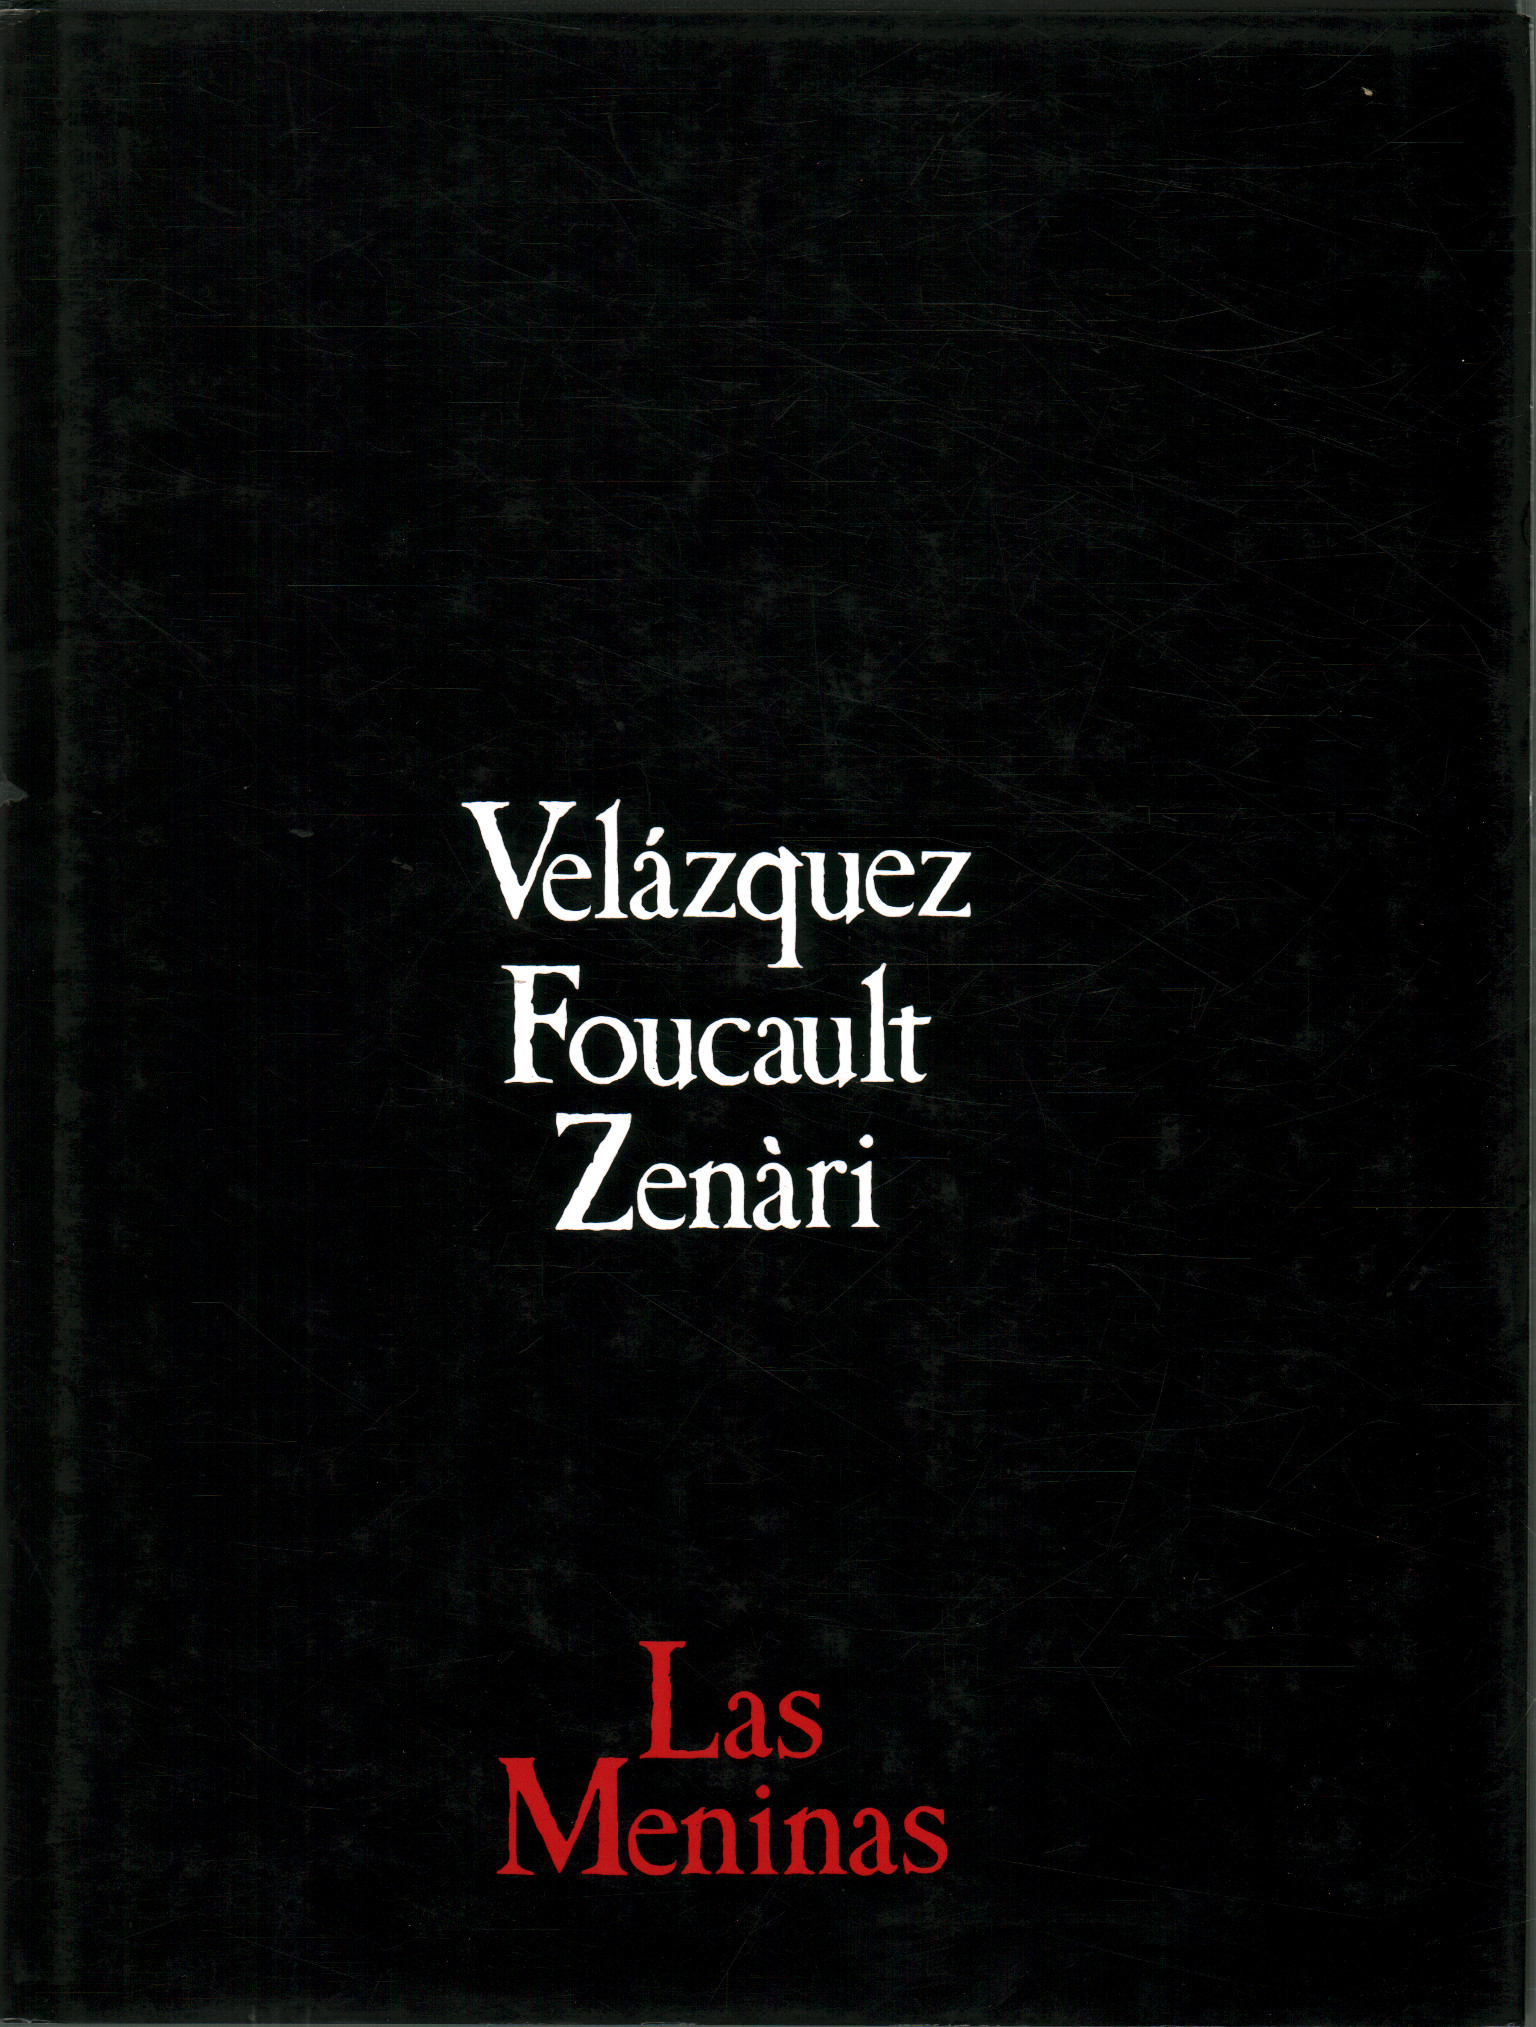 Velàzquez Foucault Zenàri. Las Meninas, AA.VV